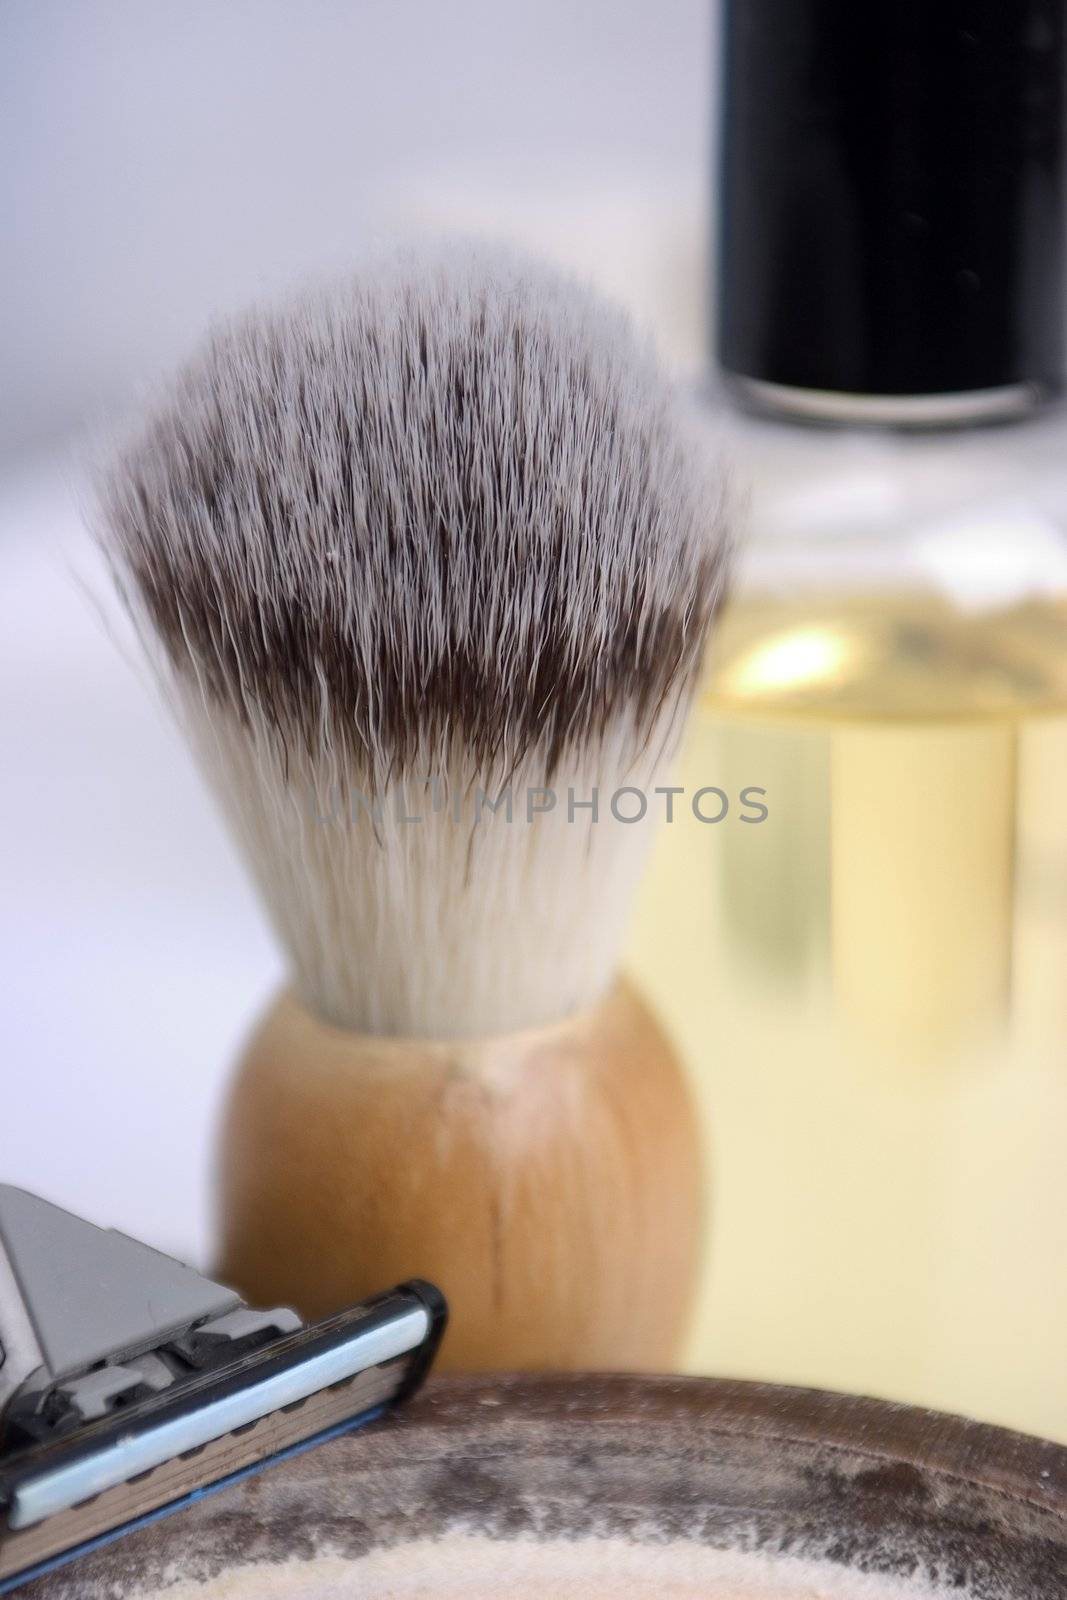 Equipment for shaving with focus on the shaving brush